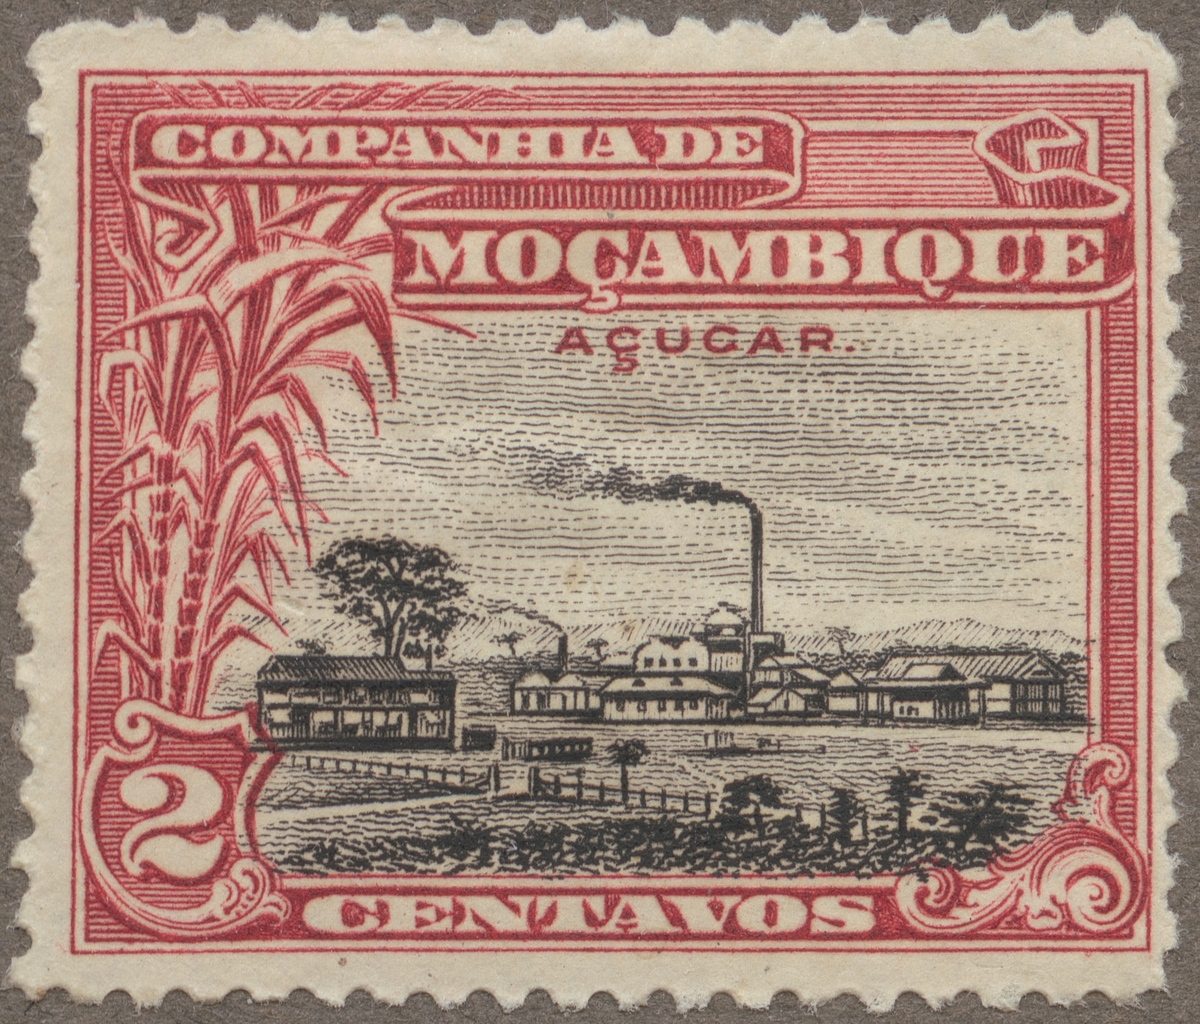 Frimärke ur Gösta Bodmans filatelistiska motivsamling, påbörjad 1950.
Frimärke från Mocambique, 1918. Motiv av sockerbruk.